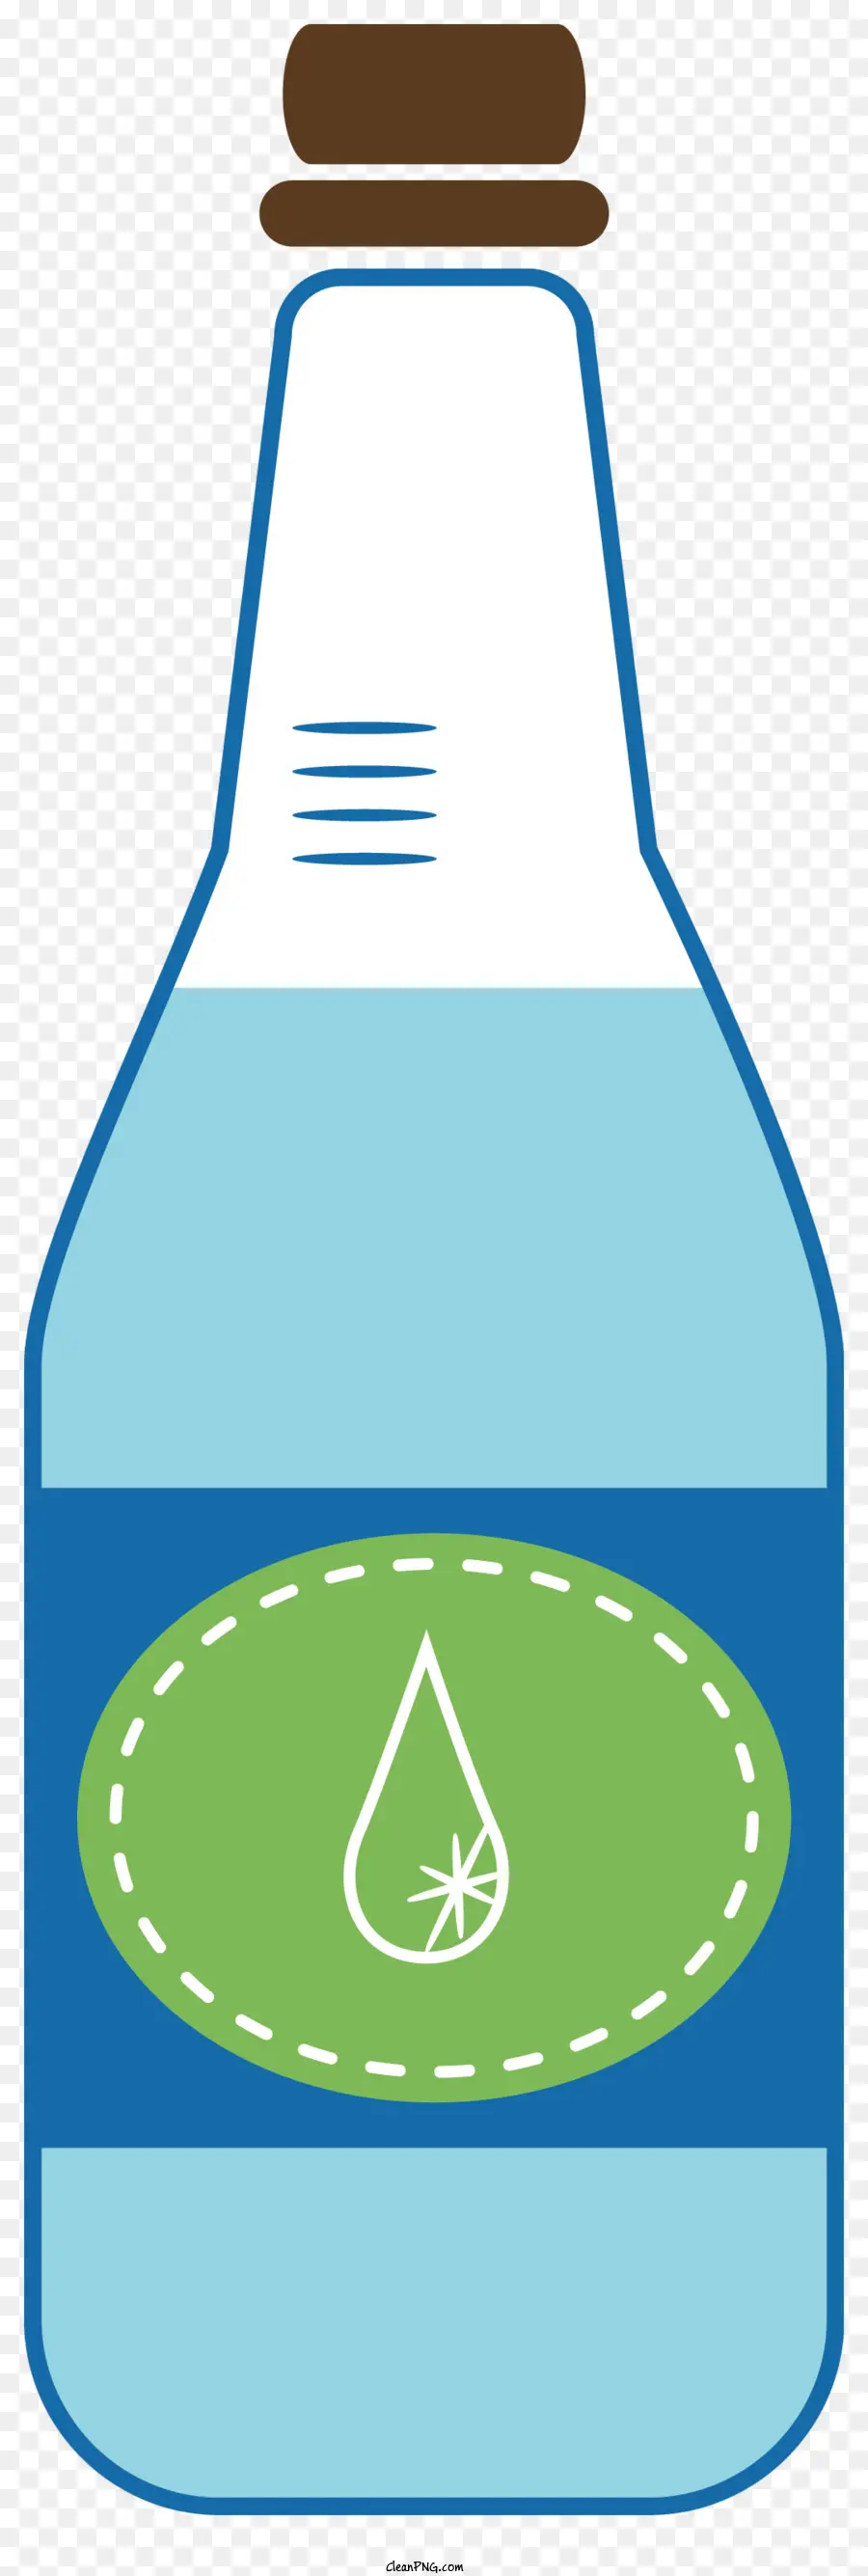 bottiglia di plastica - Acqua in bottiglia di plastica con tappo verde